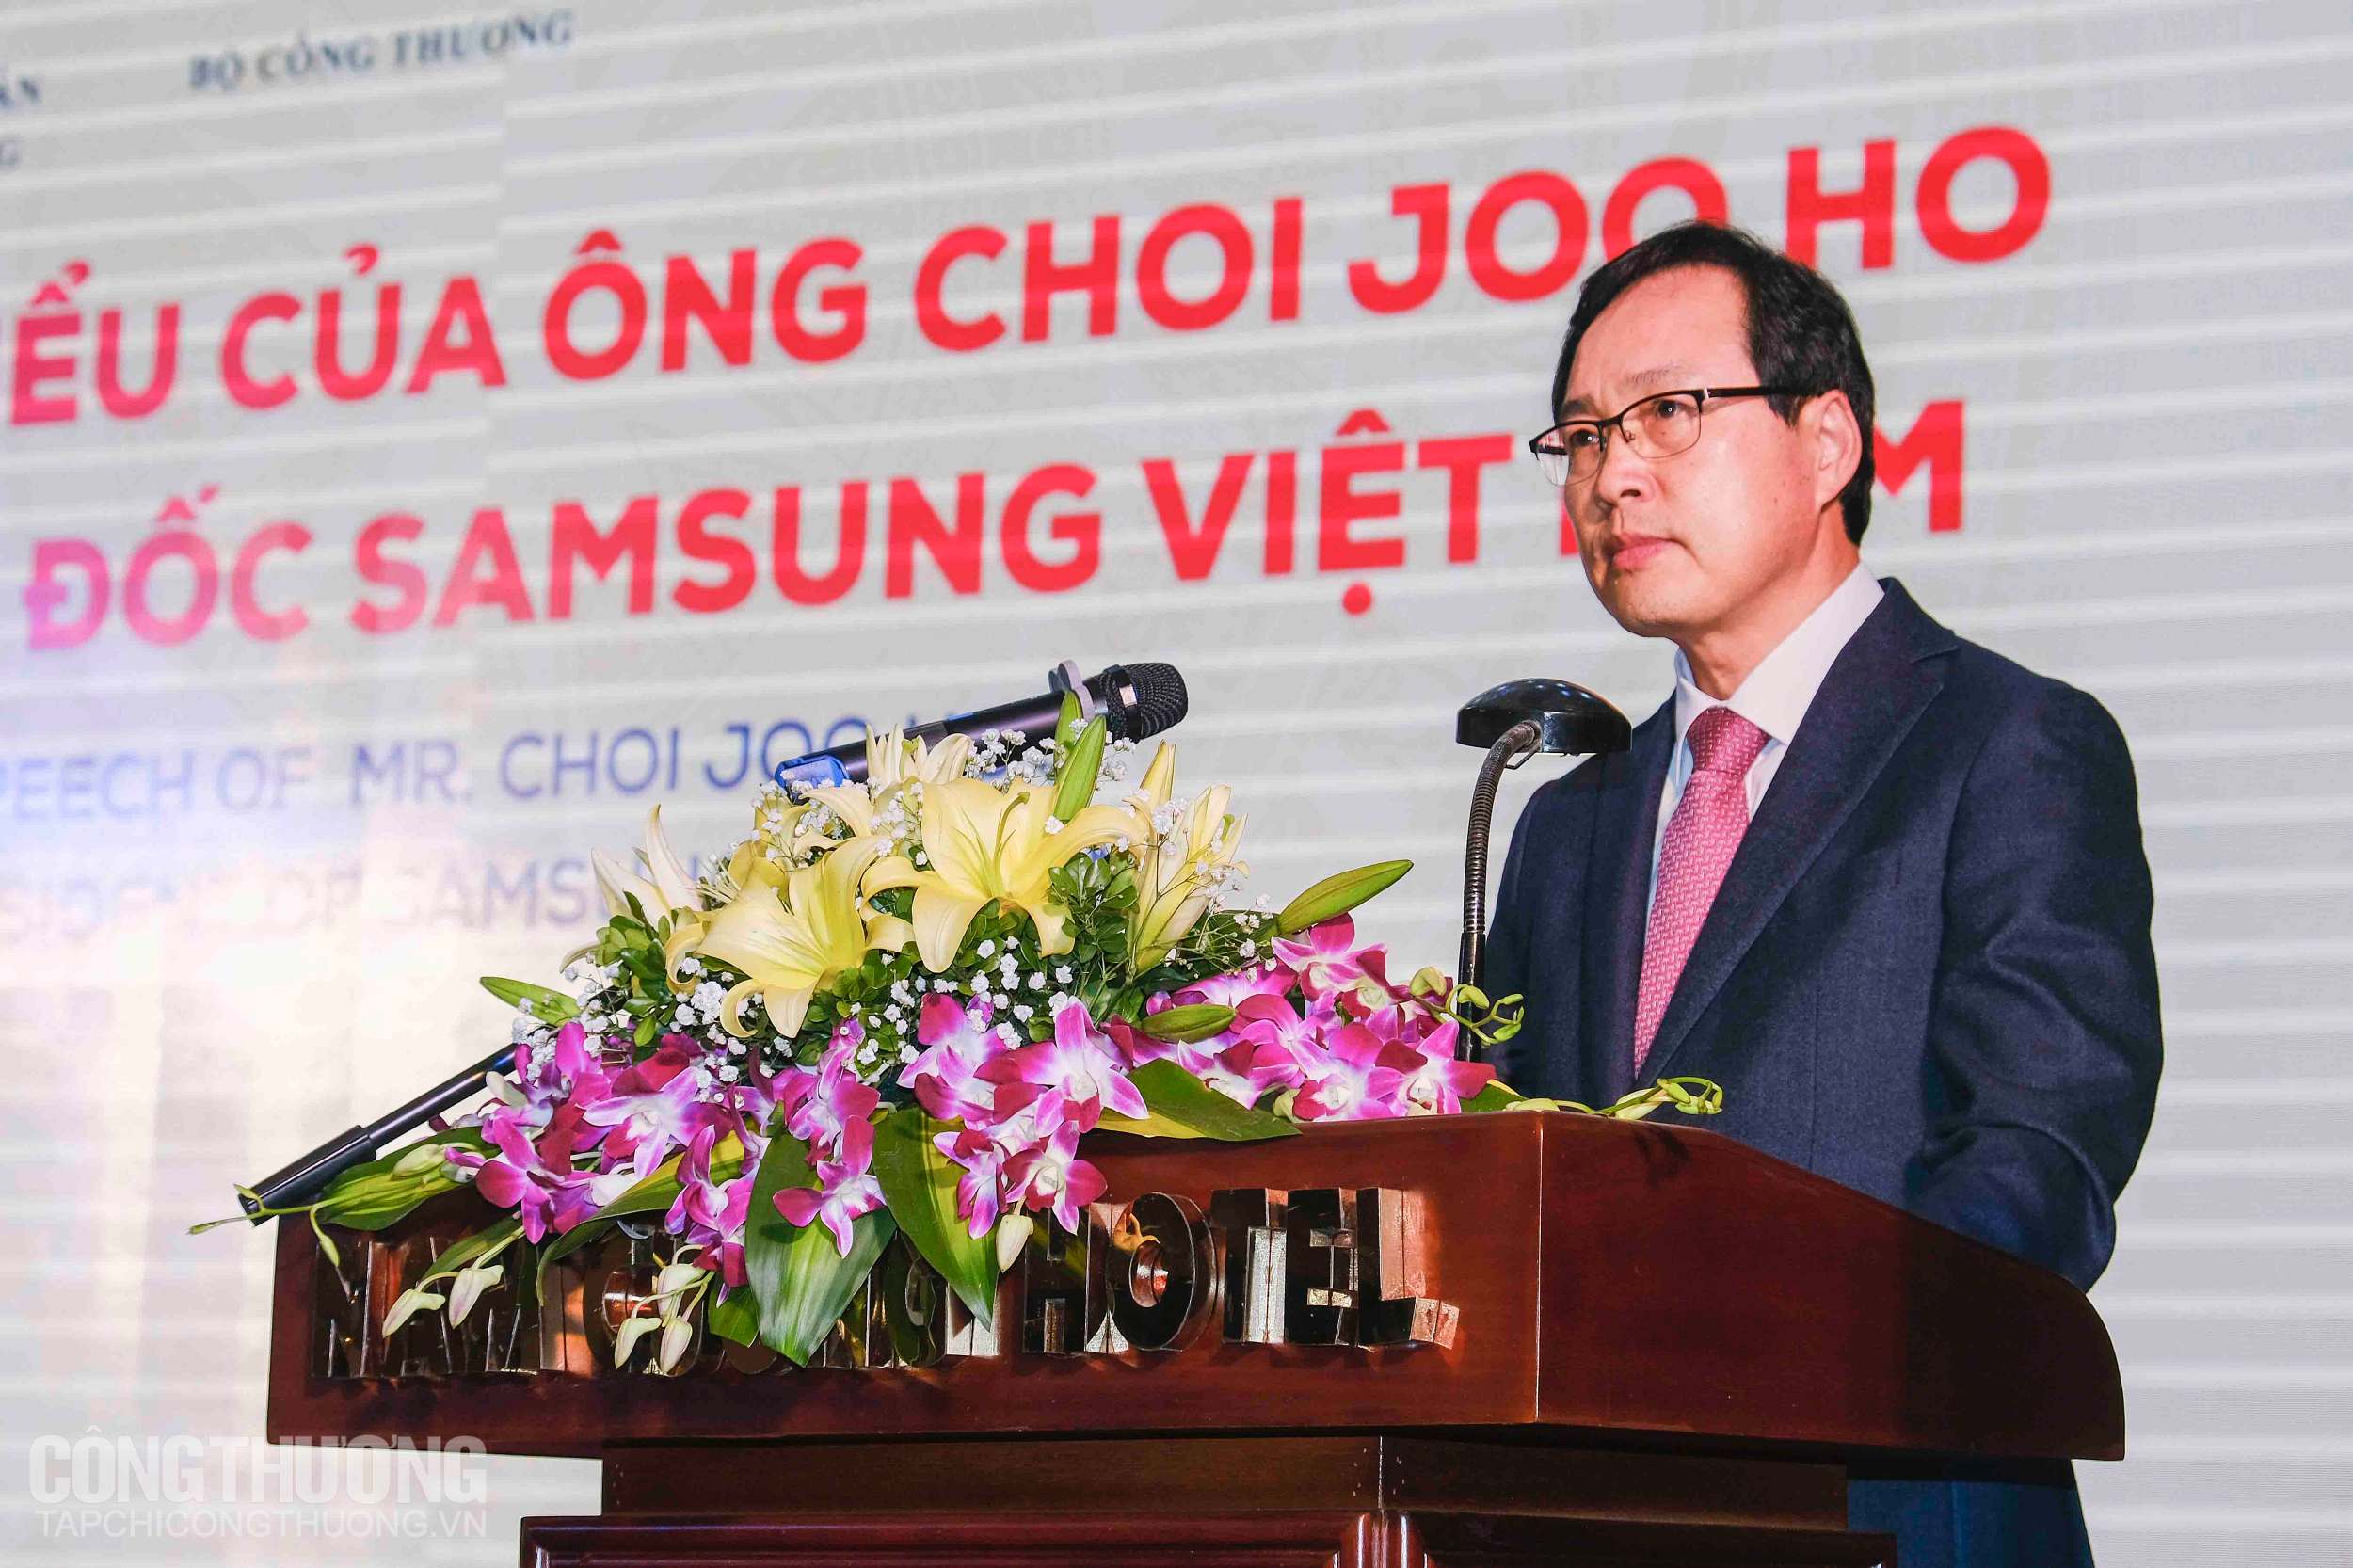 Ông Choi Joo Ho - Tổng giám đốc Tổ hợp Samsung tại Việt Nam